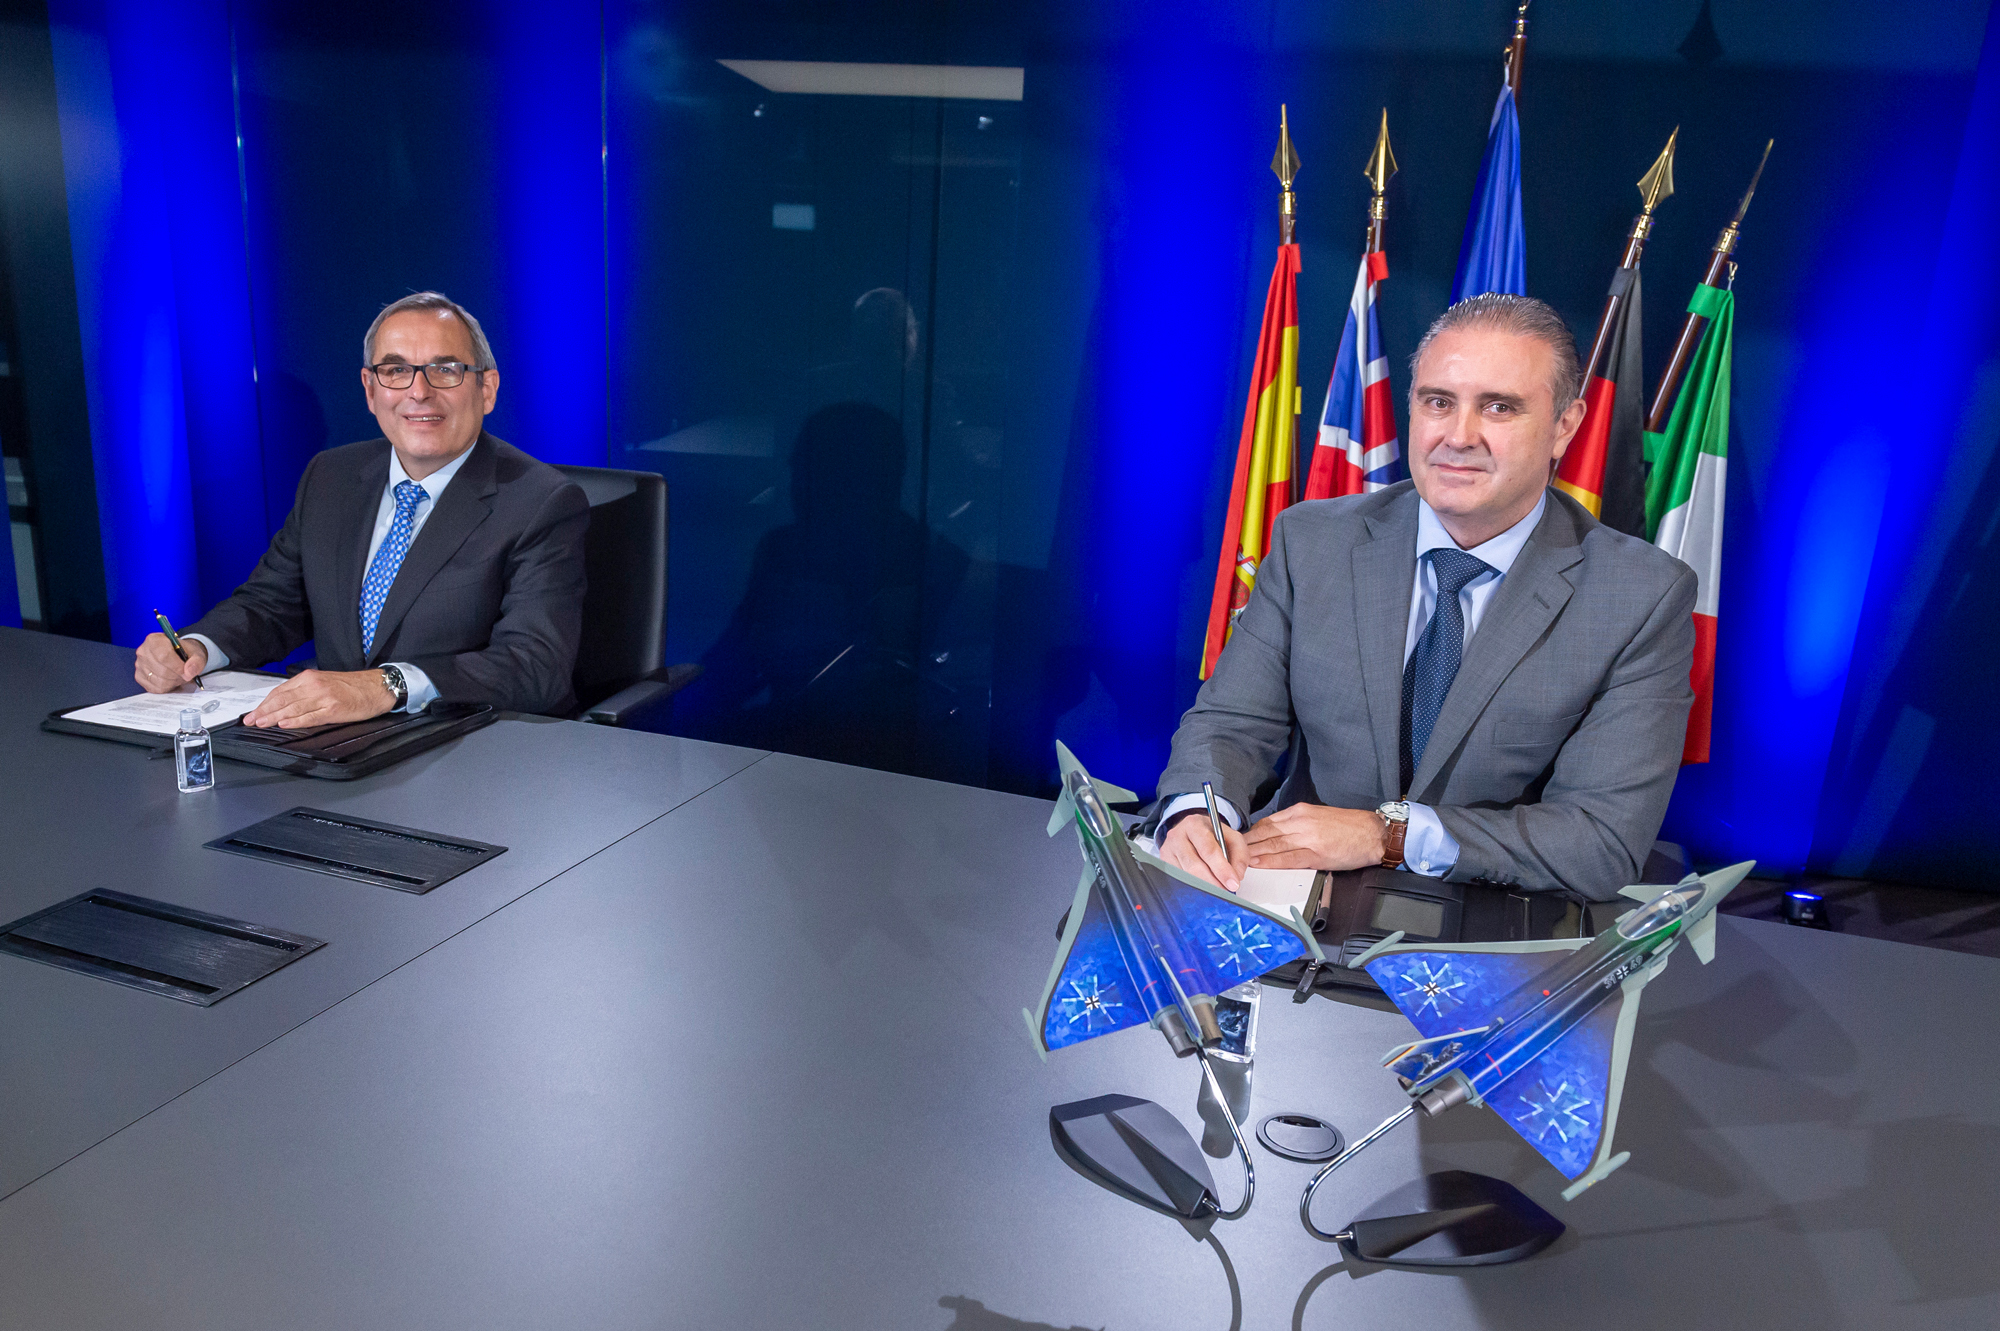 Gerhard BÃ¤hr, CEO of EUROJET (left), and General Miguel Ãngel MartÃ­n PÃ©rez, General Manager of NETMA (right) sign the contract for 56 new EJ200 engines.